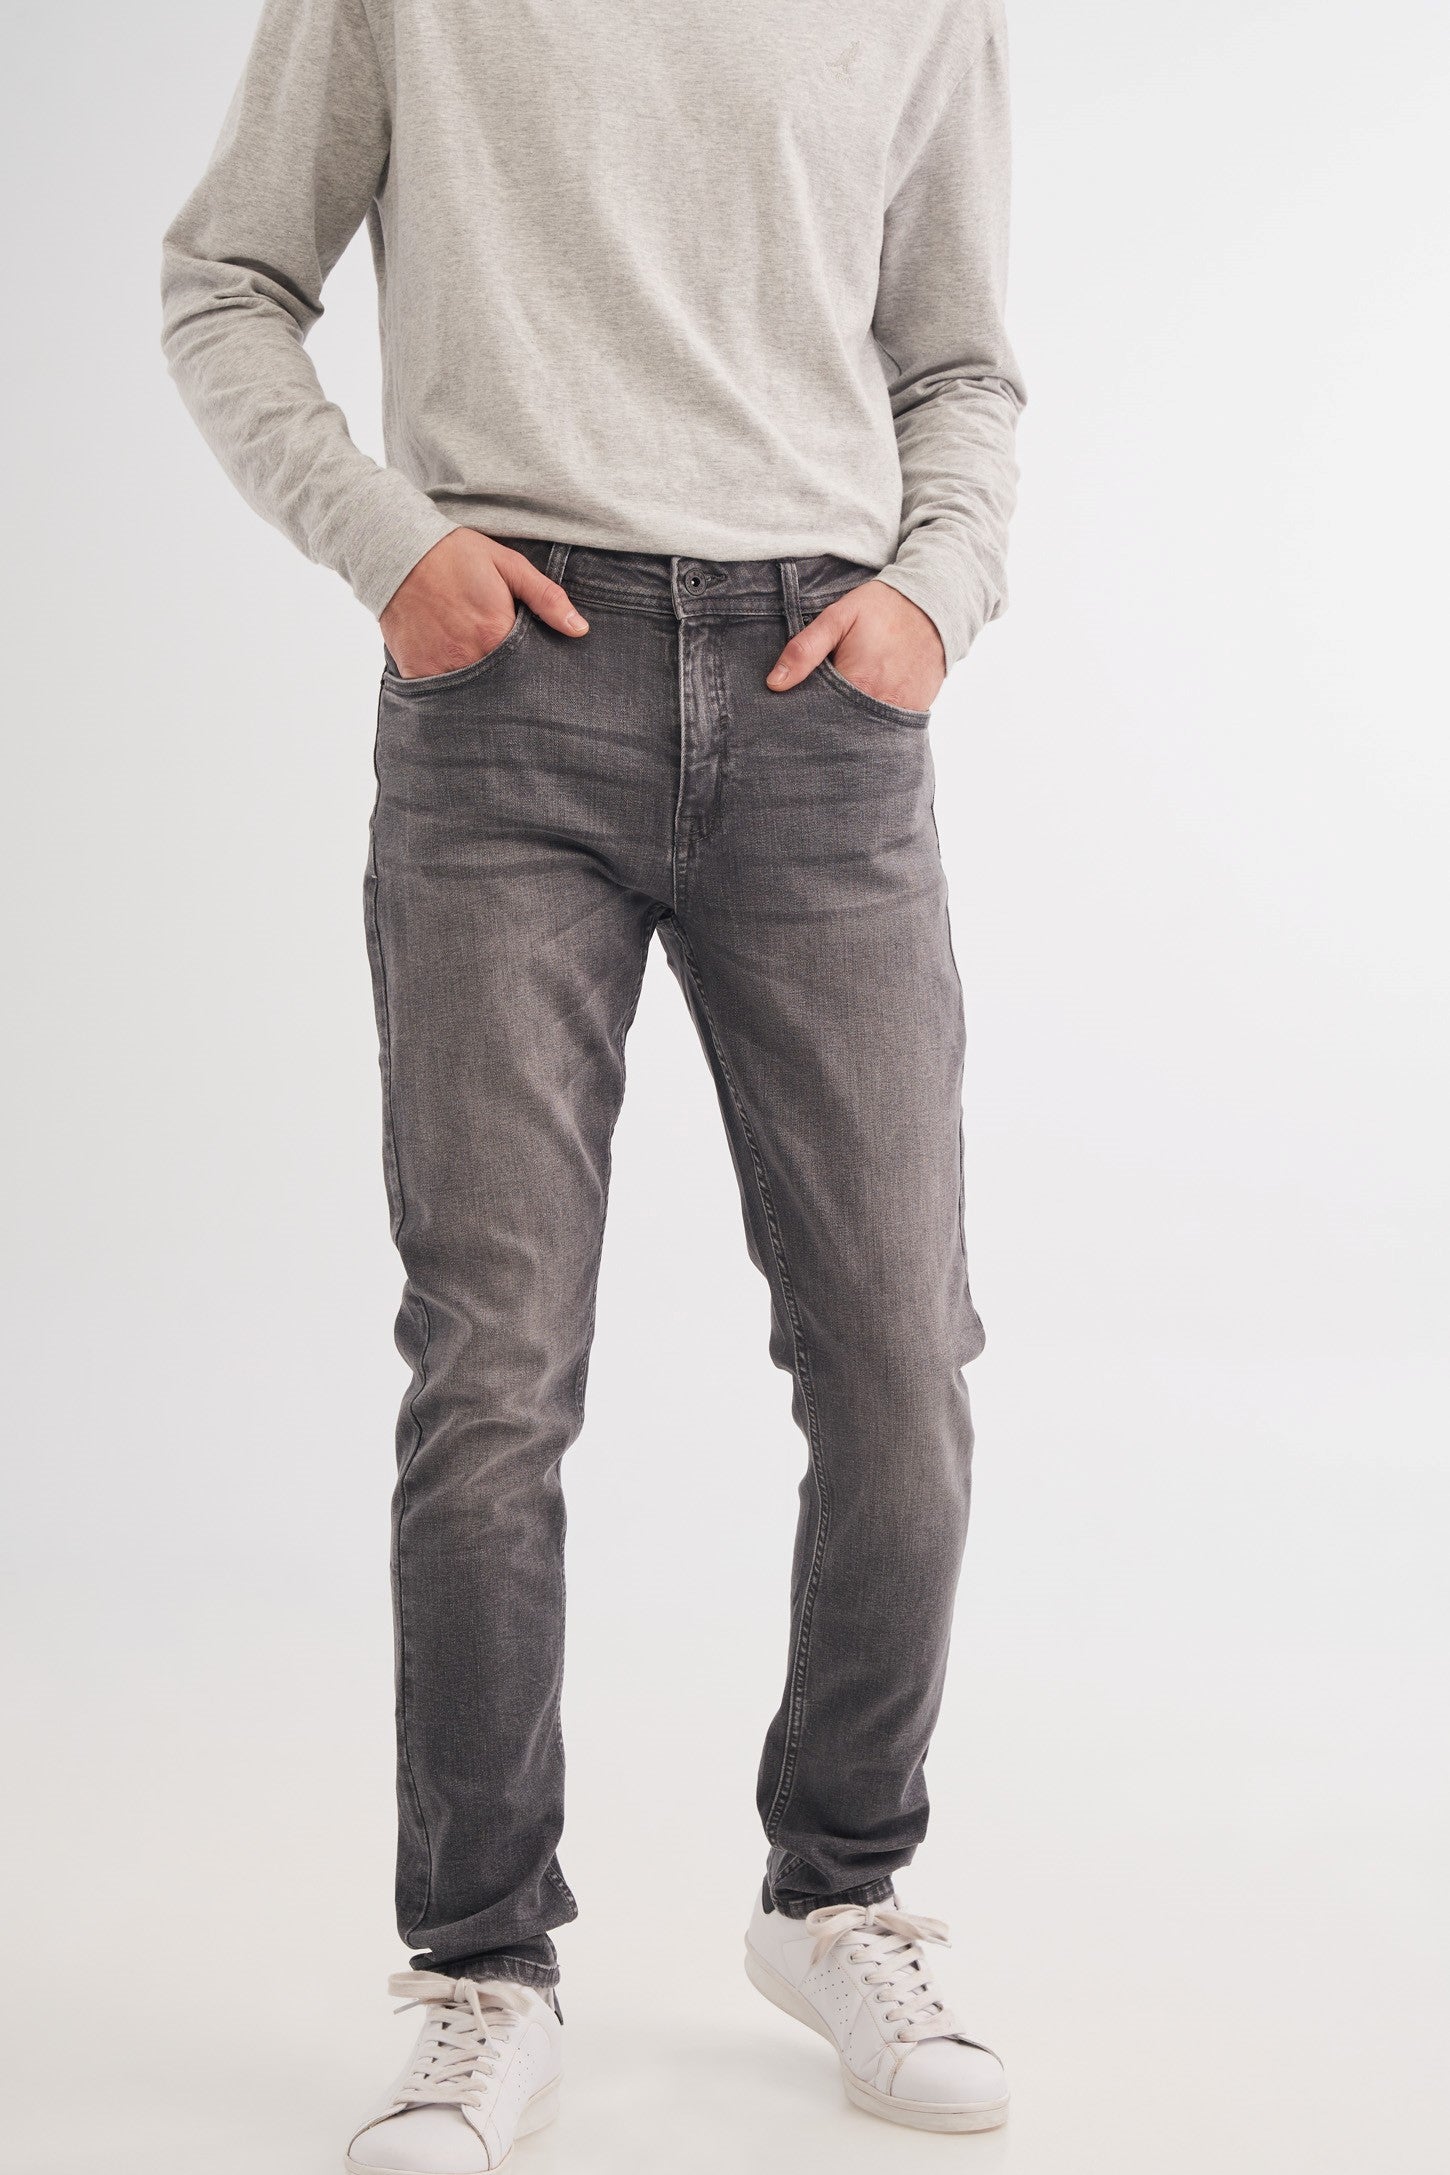 Jeans gris foncé coupe ajustée - Homme && GRIS